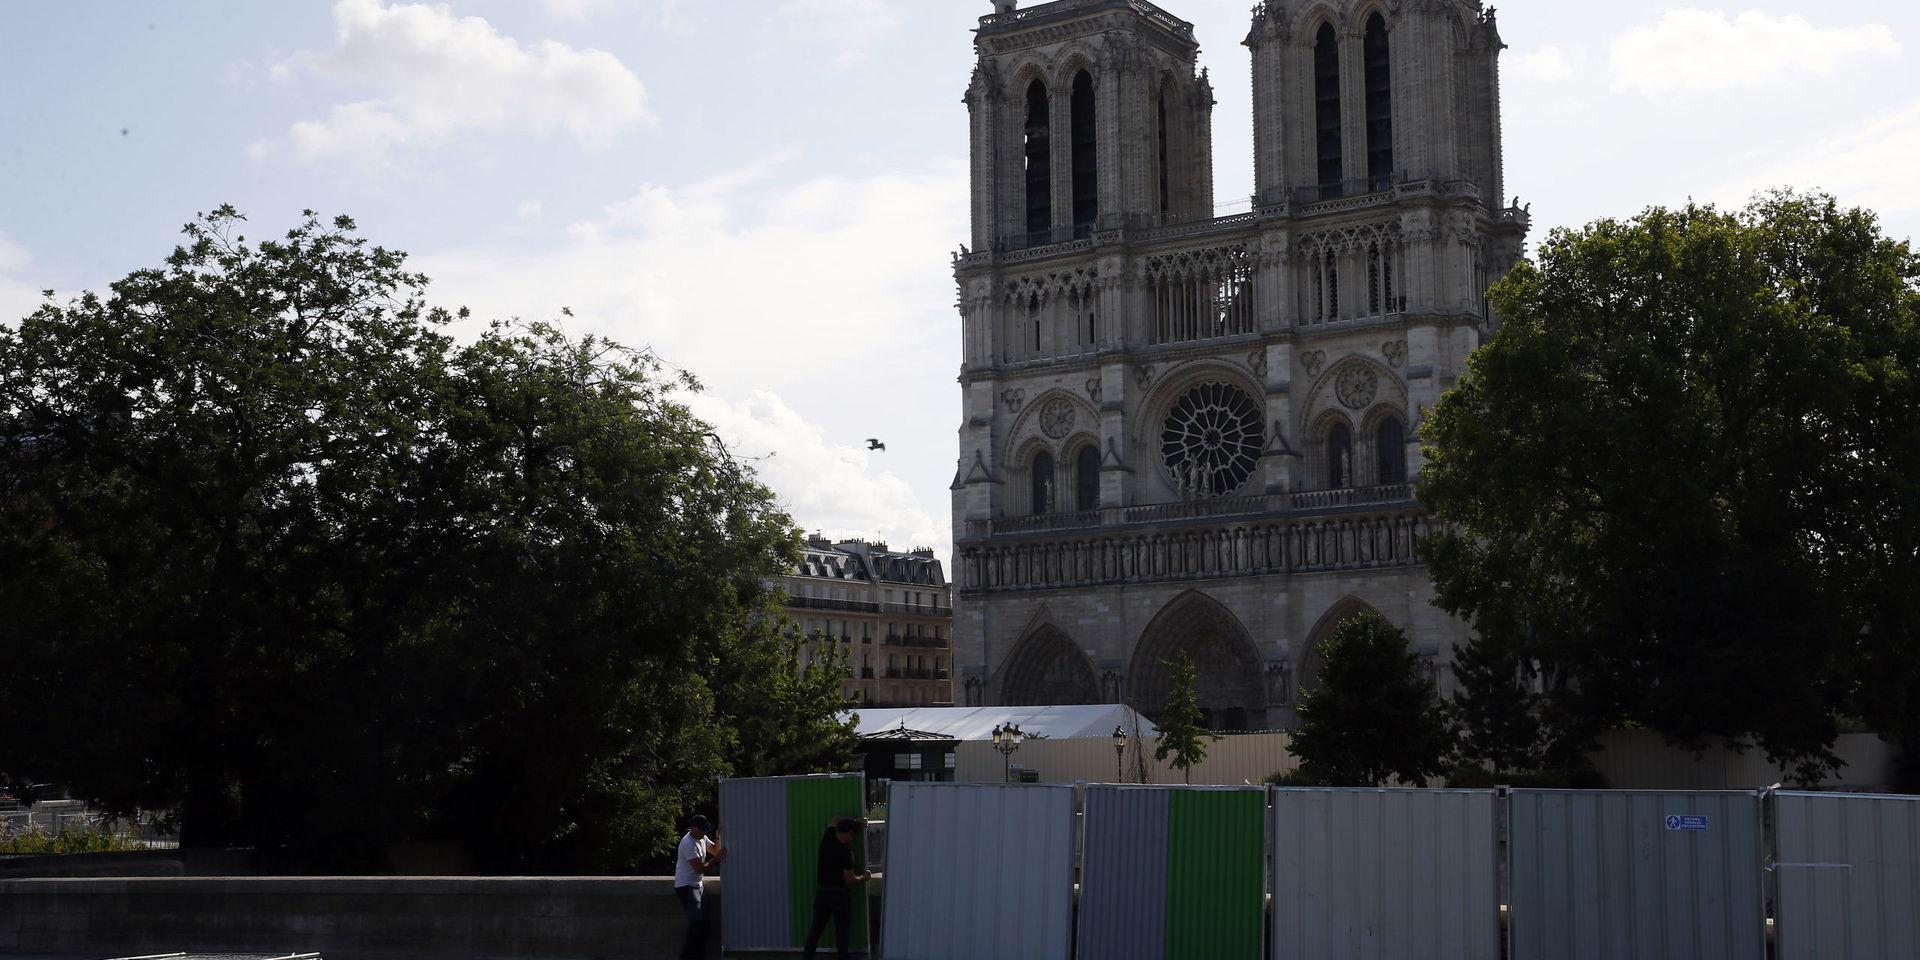 Katedralen Notre Dame i Paris döljs av höga avspärrningar. Bakom dem ska området blysaneras.